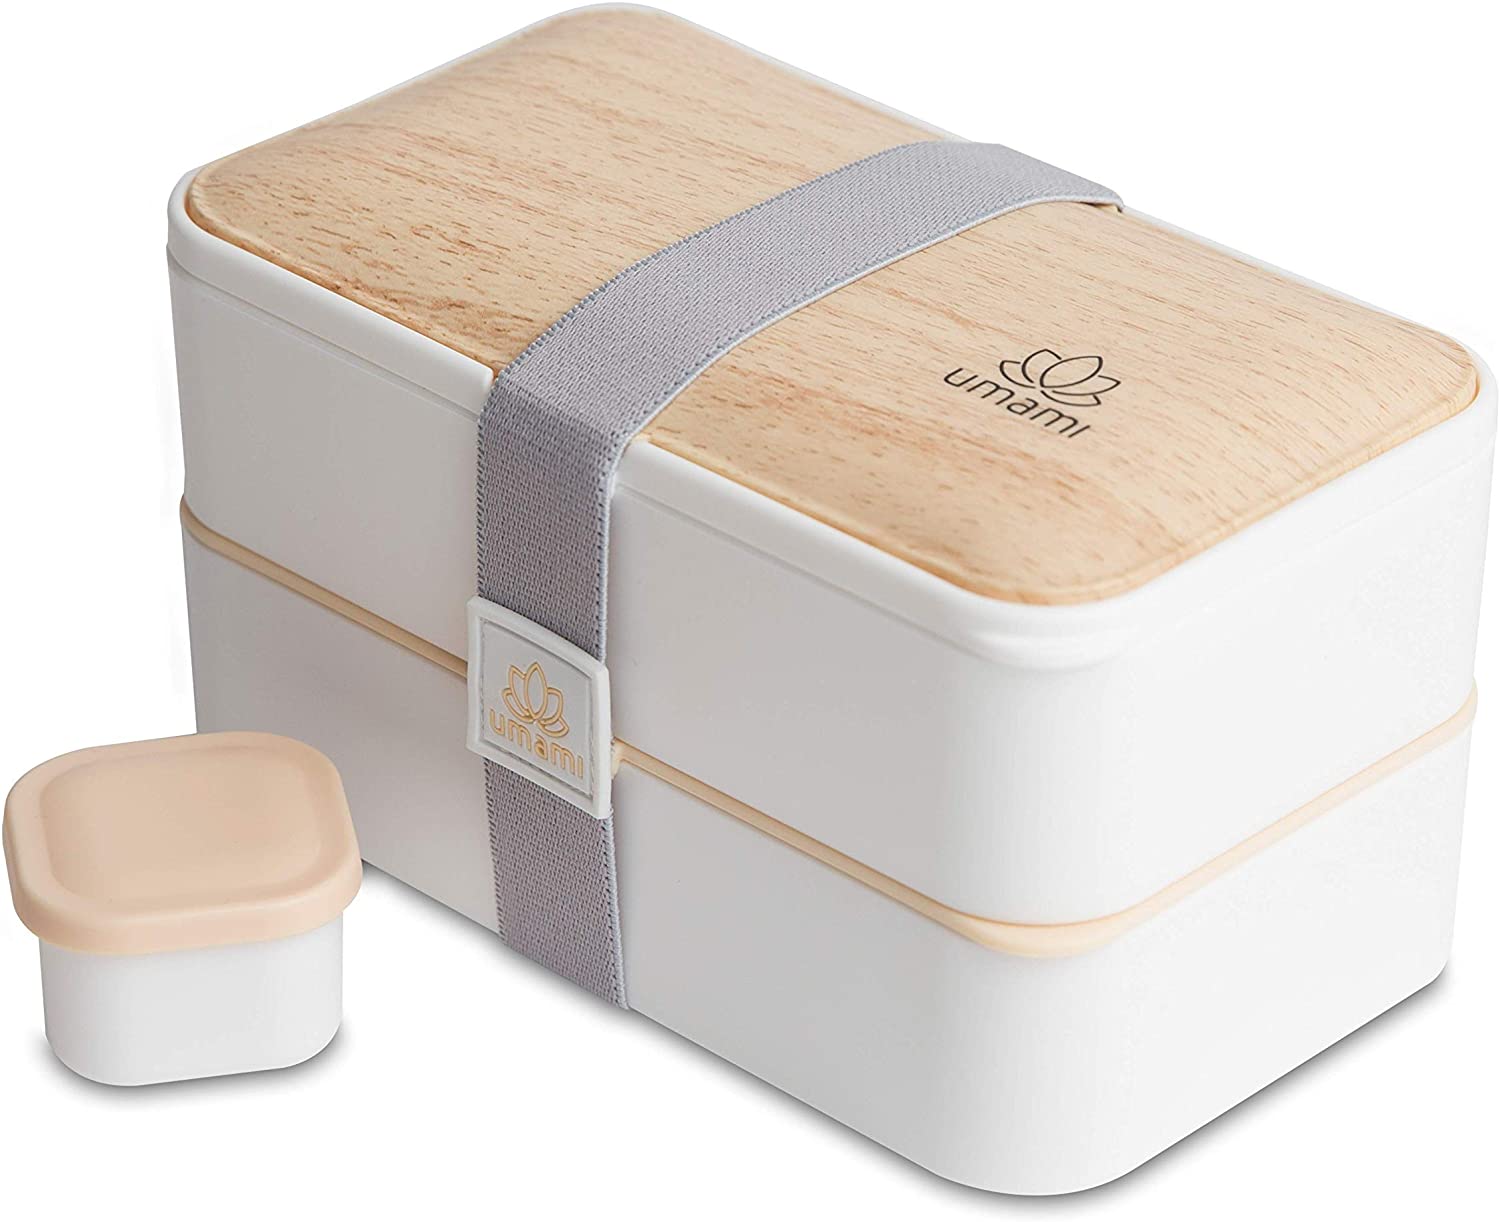 Umami Bamboo Leak-Proof Bento Box